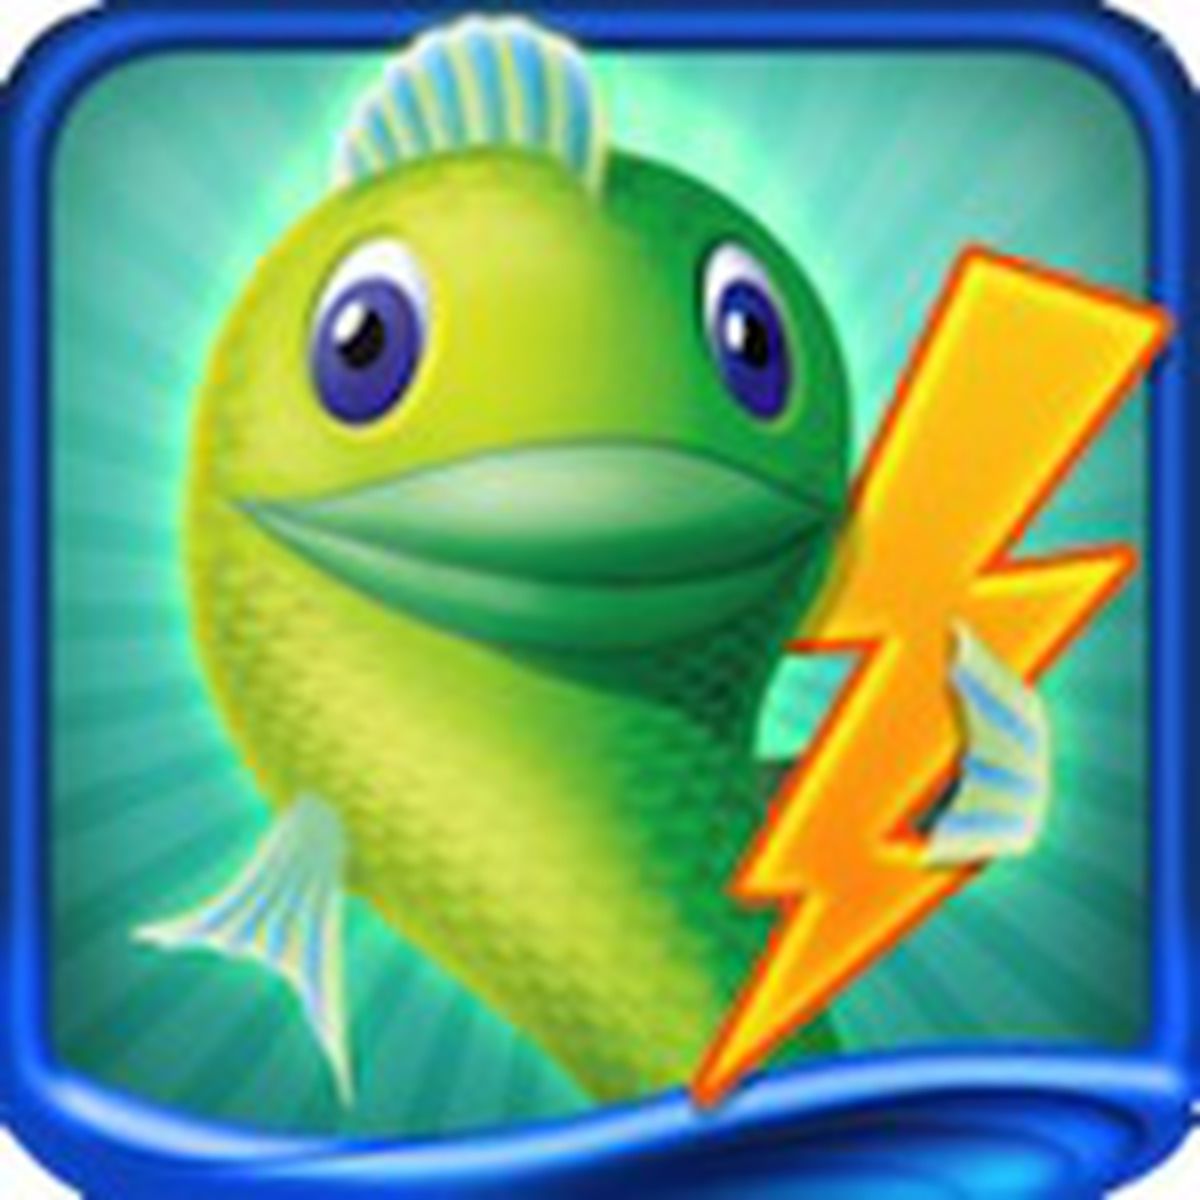 Big Fish Games App – Apps no Google Play